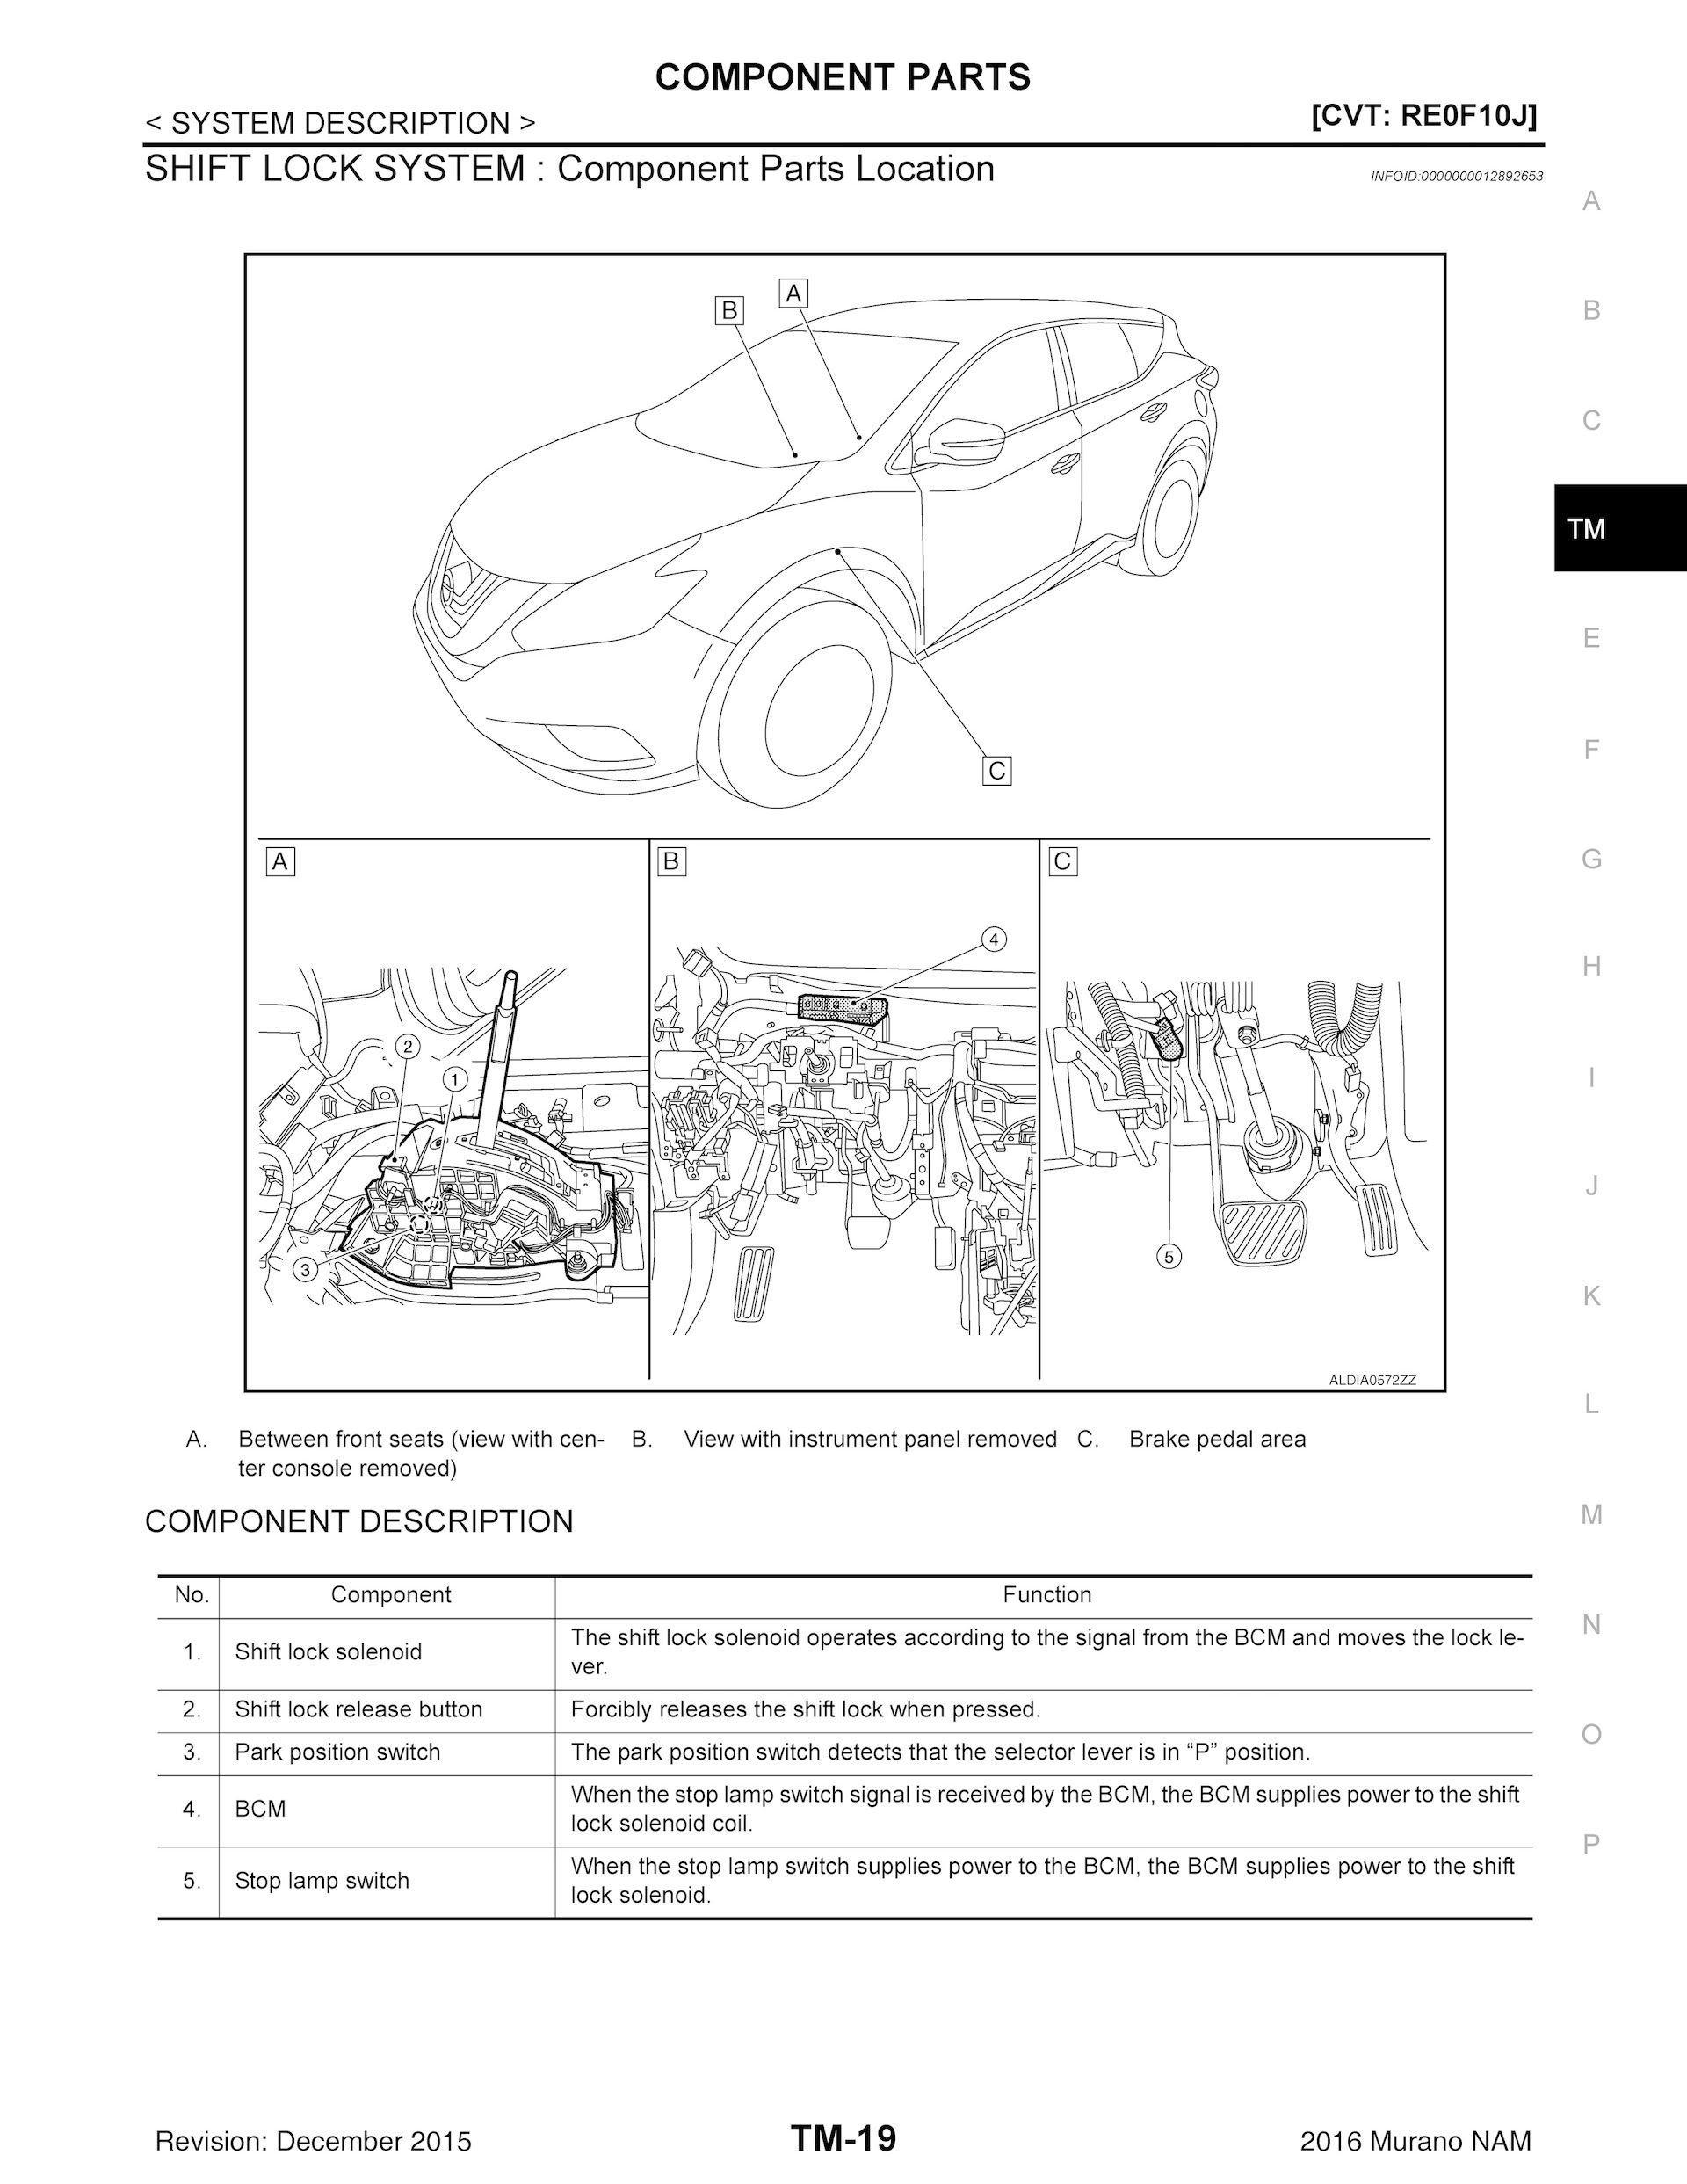 2019 Nissan Murano Repair Manual, Shift Lock System